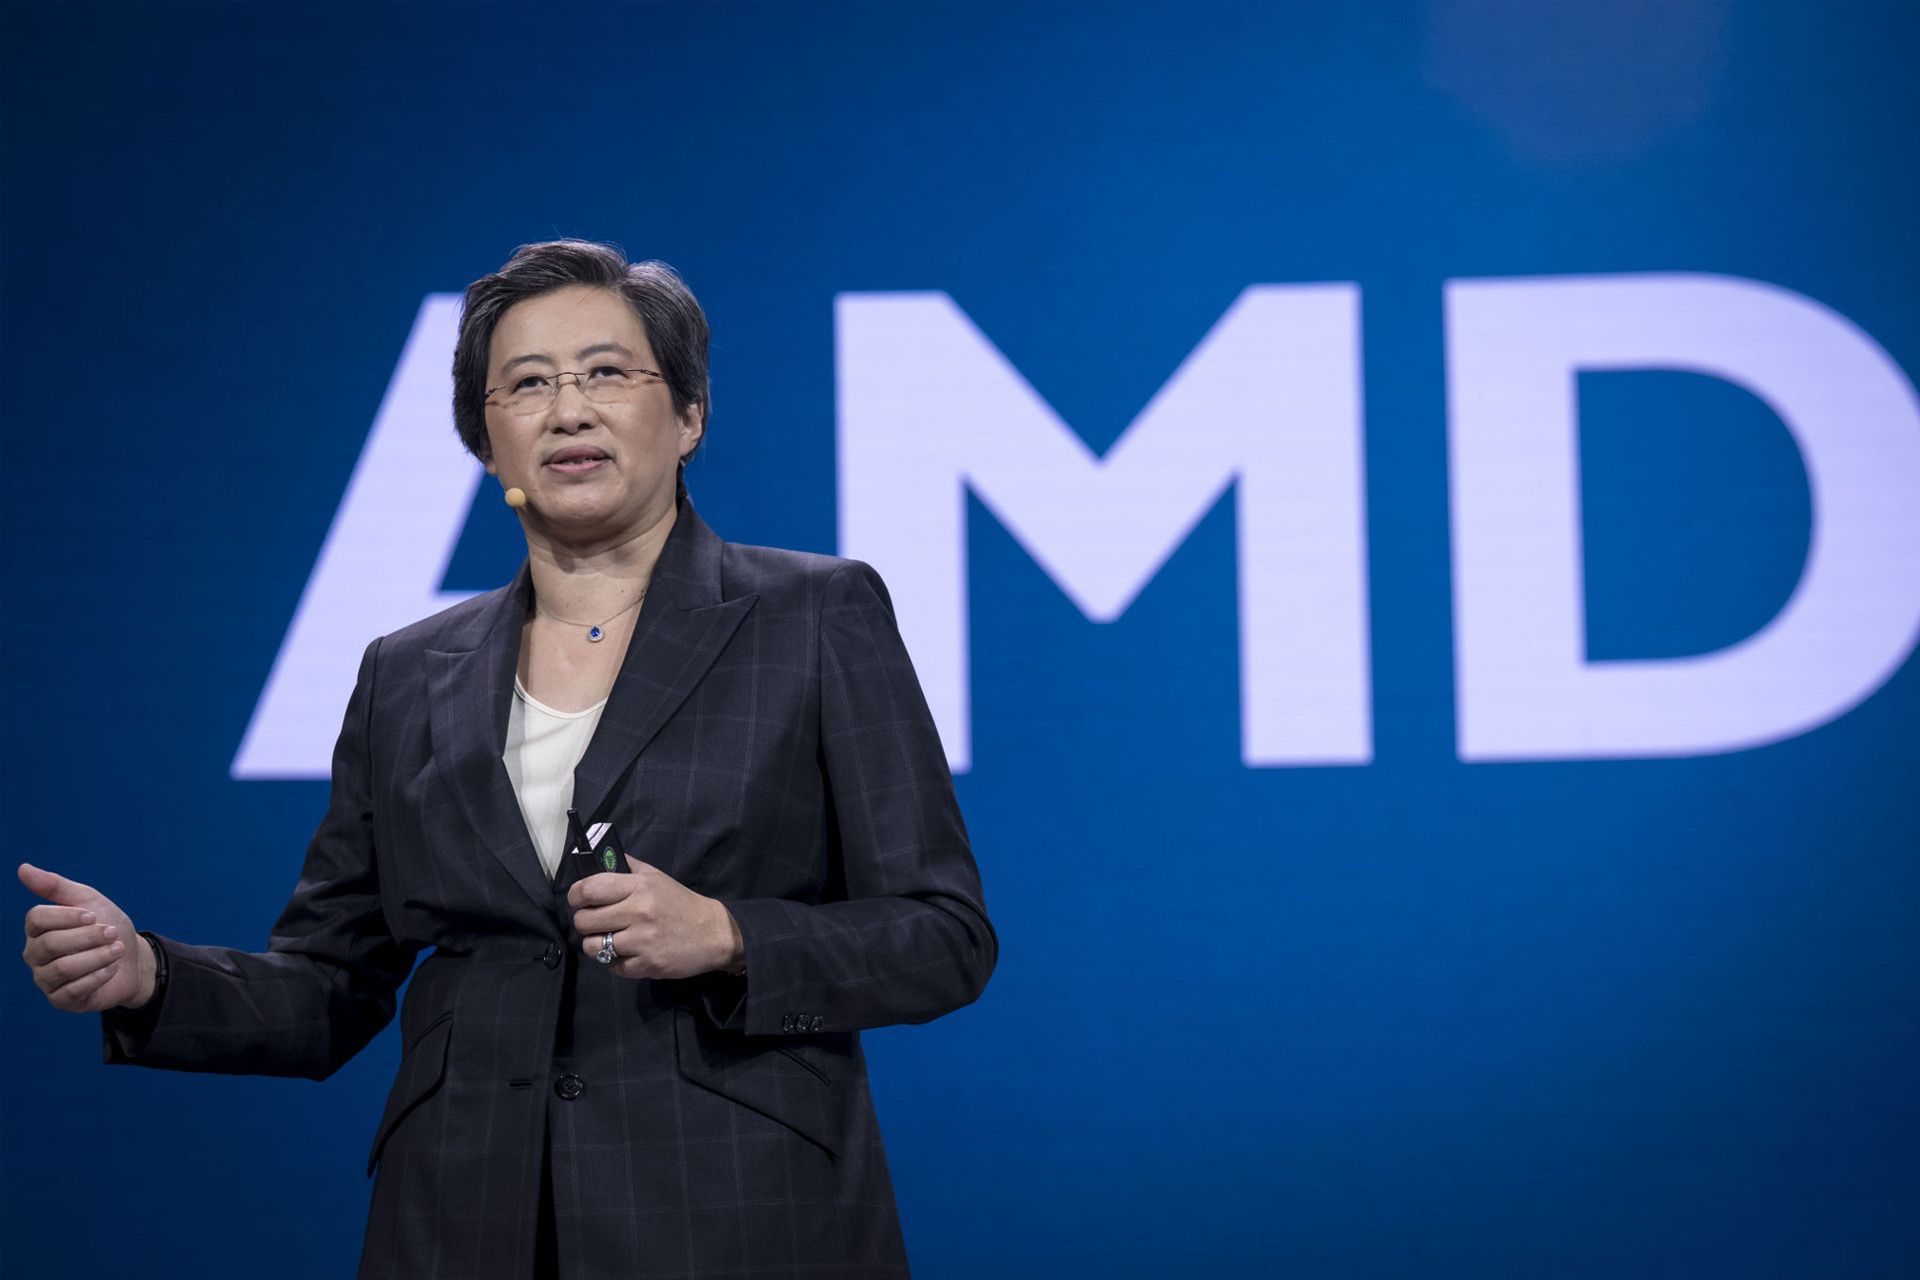 دکتر لیزا سو / Lisa Su مدیرعامل ای ام دی در برابر لوگو AMD